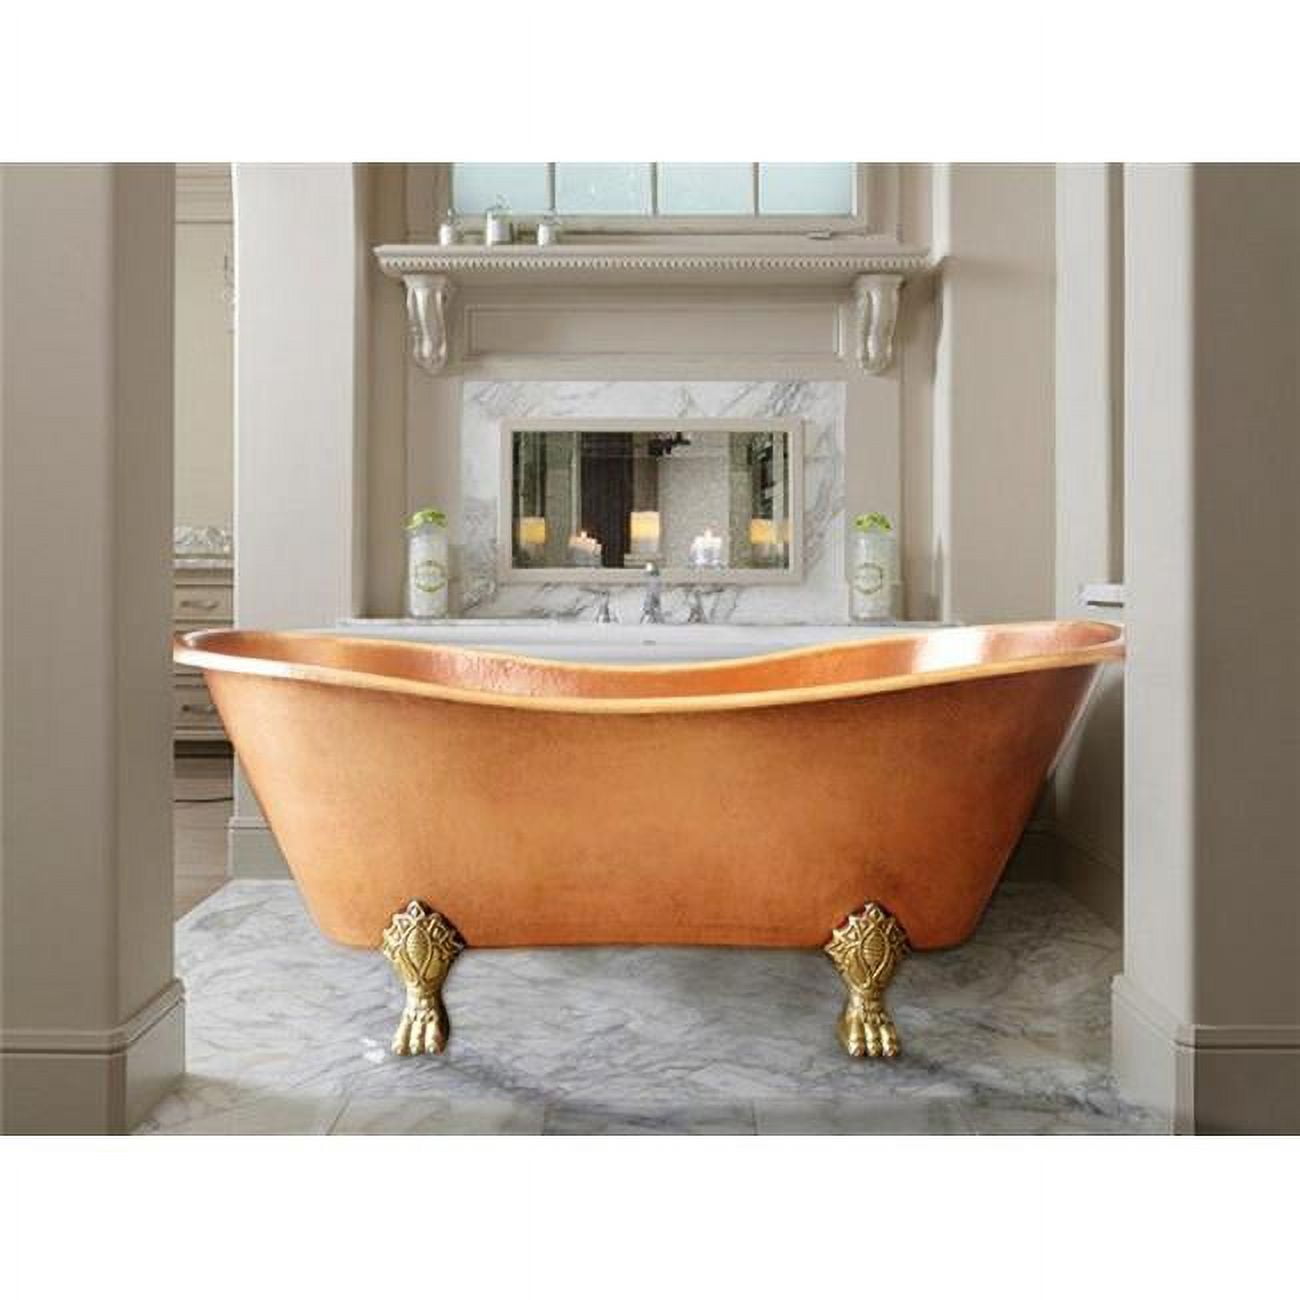 Cbt-at-58-br Copper Bath Tub Antique Design, Bright - Small - 28 X 28 X 58 In.